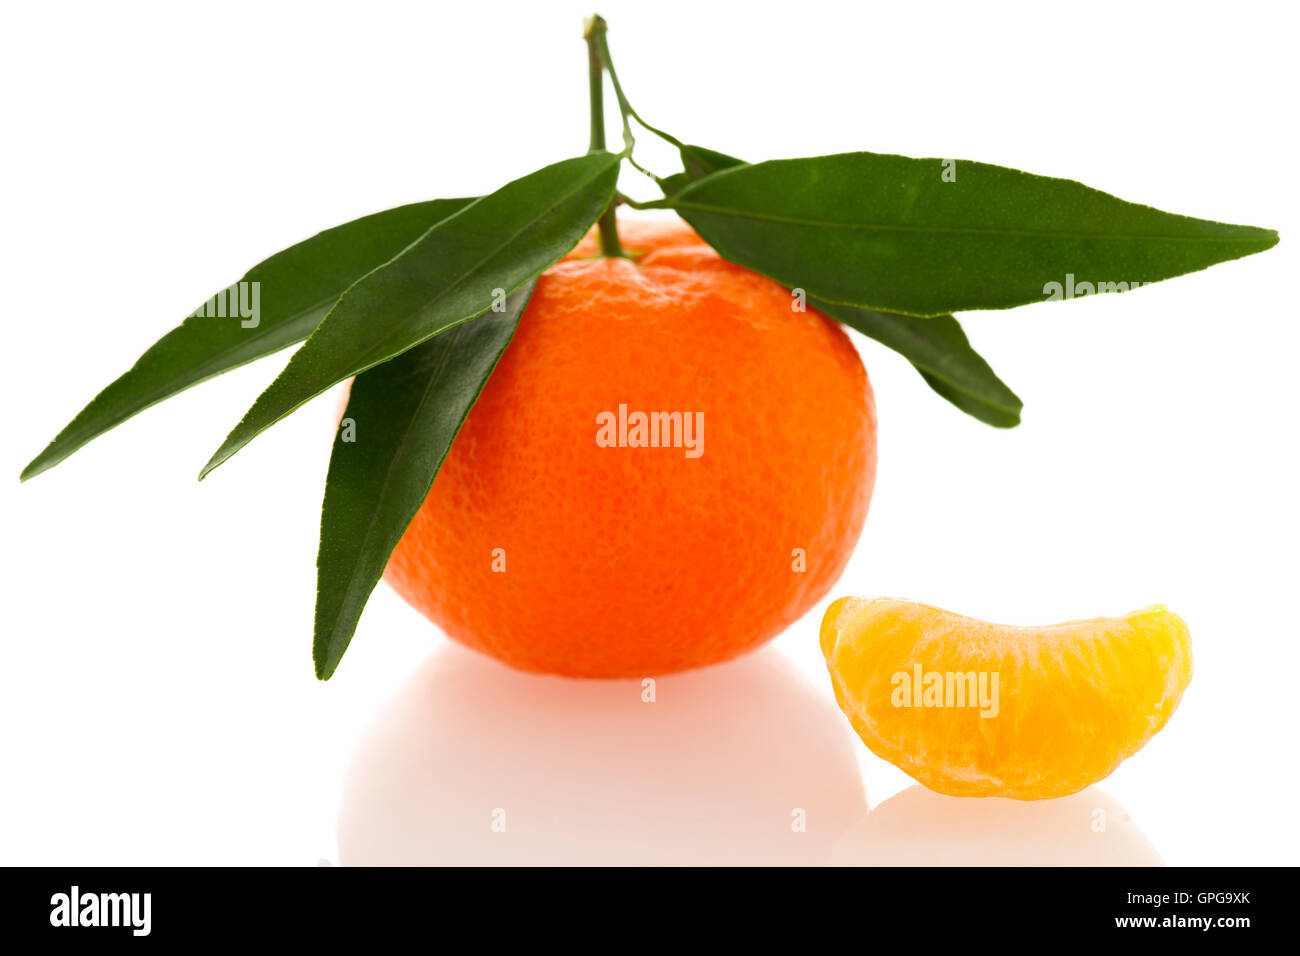 Agrumes mandarin orange fraîches non pelées avec feuilles vertes et la moitié des tranches de fruits pelés isolated over white background. Tasty swe Banque D'Images